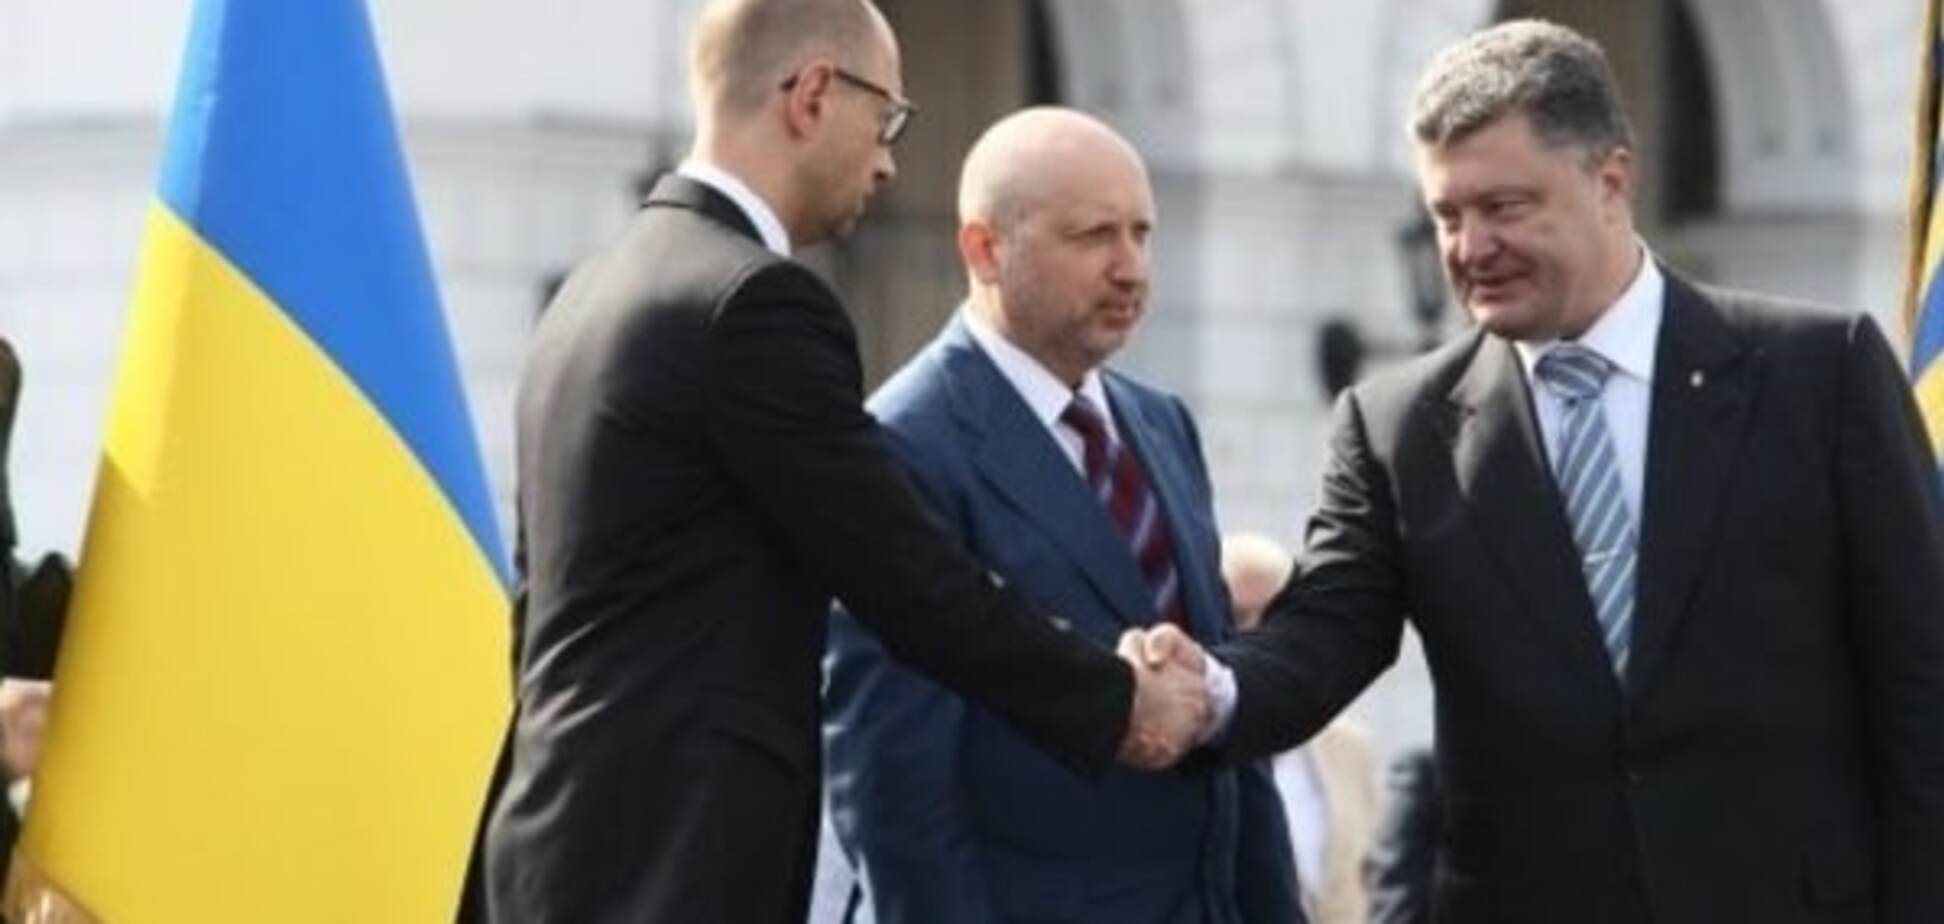 Яценюк, после своей отставки, займет должность вице-президента Украины? 